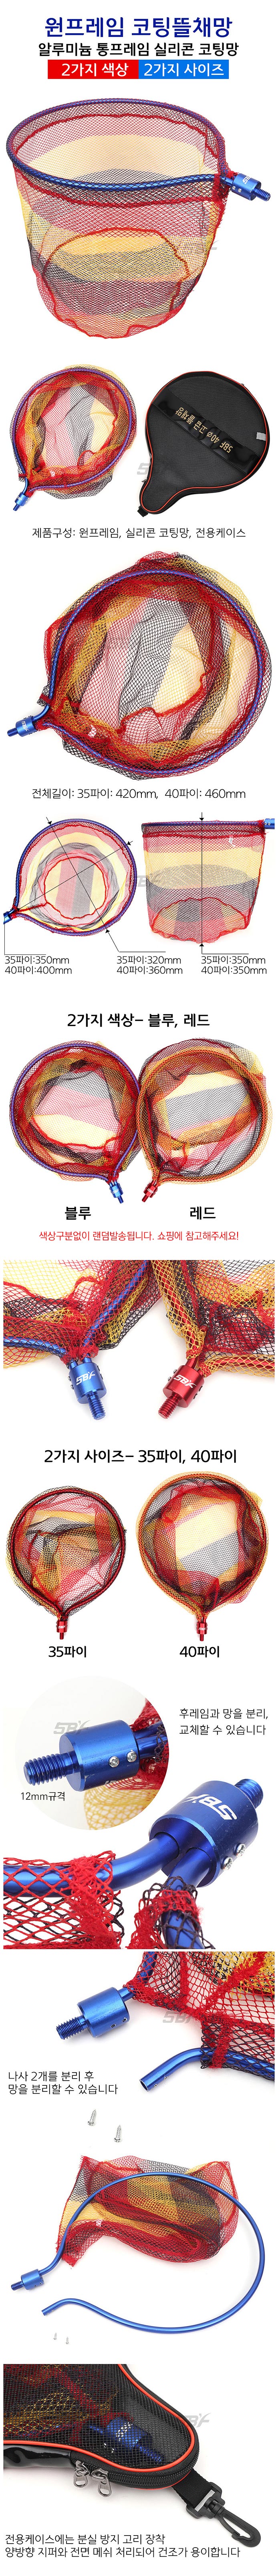 원프레임 코팅 민물뜰채망 35cm/40cm